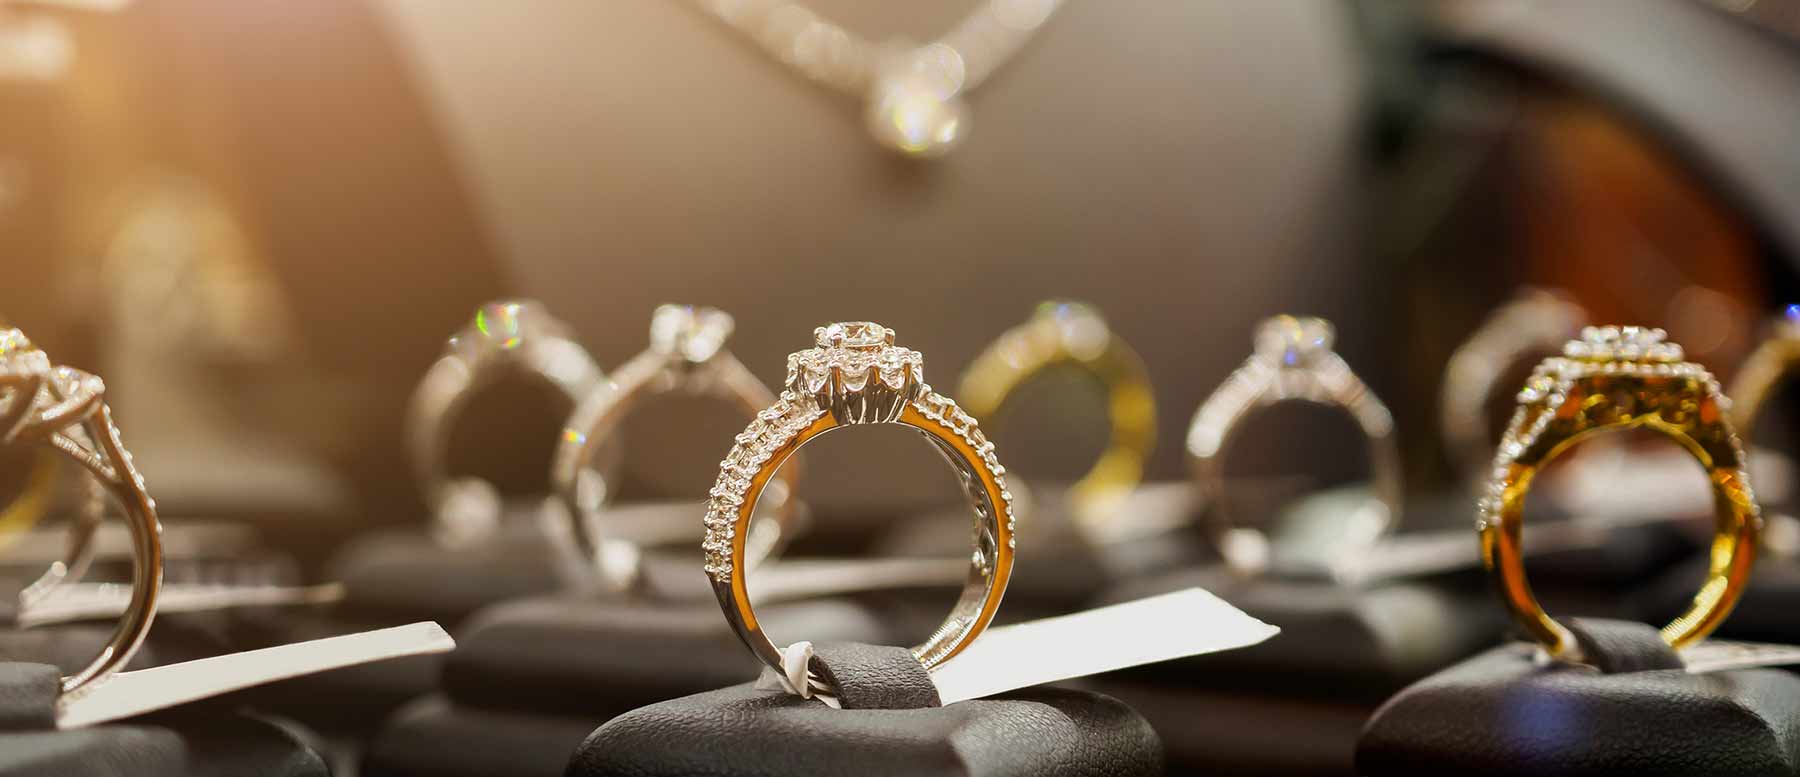 Classifica e costo degli anelli più cari al mondo